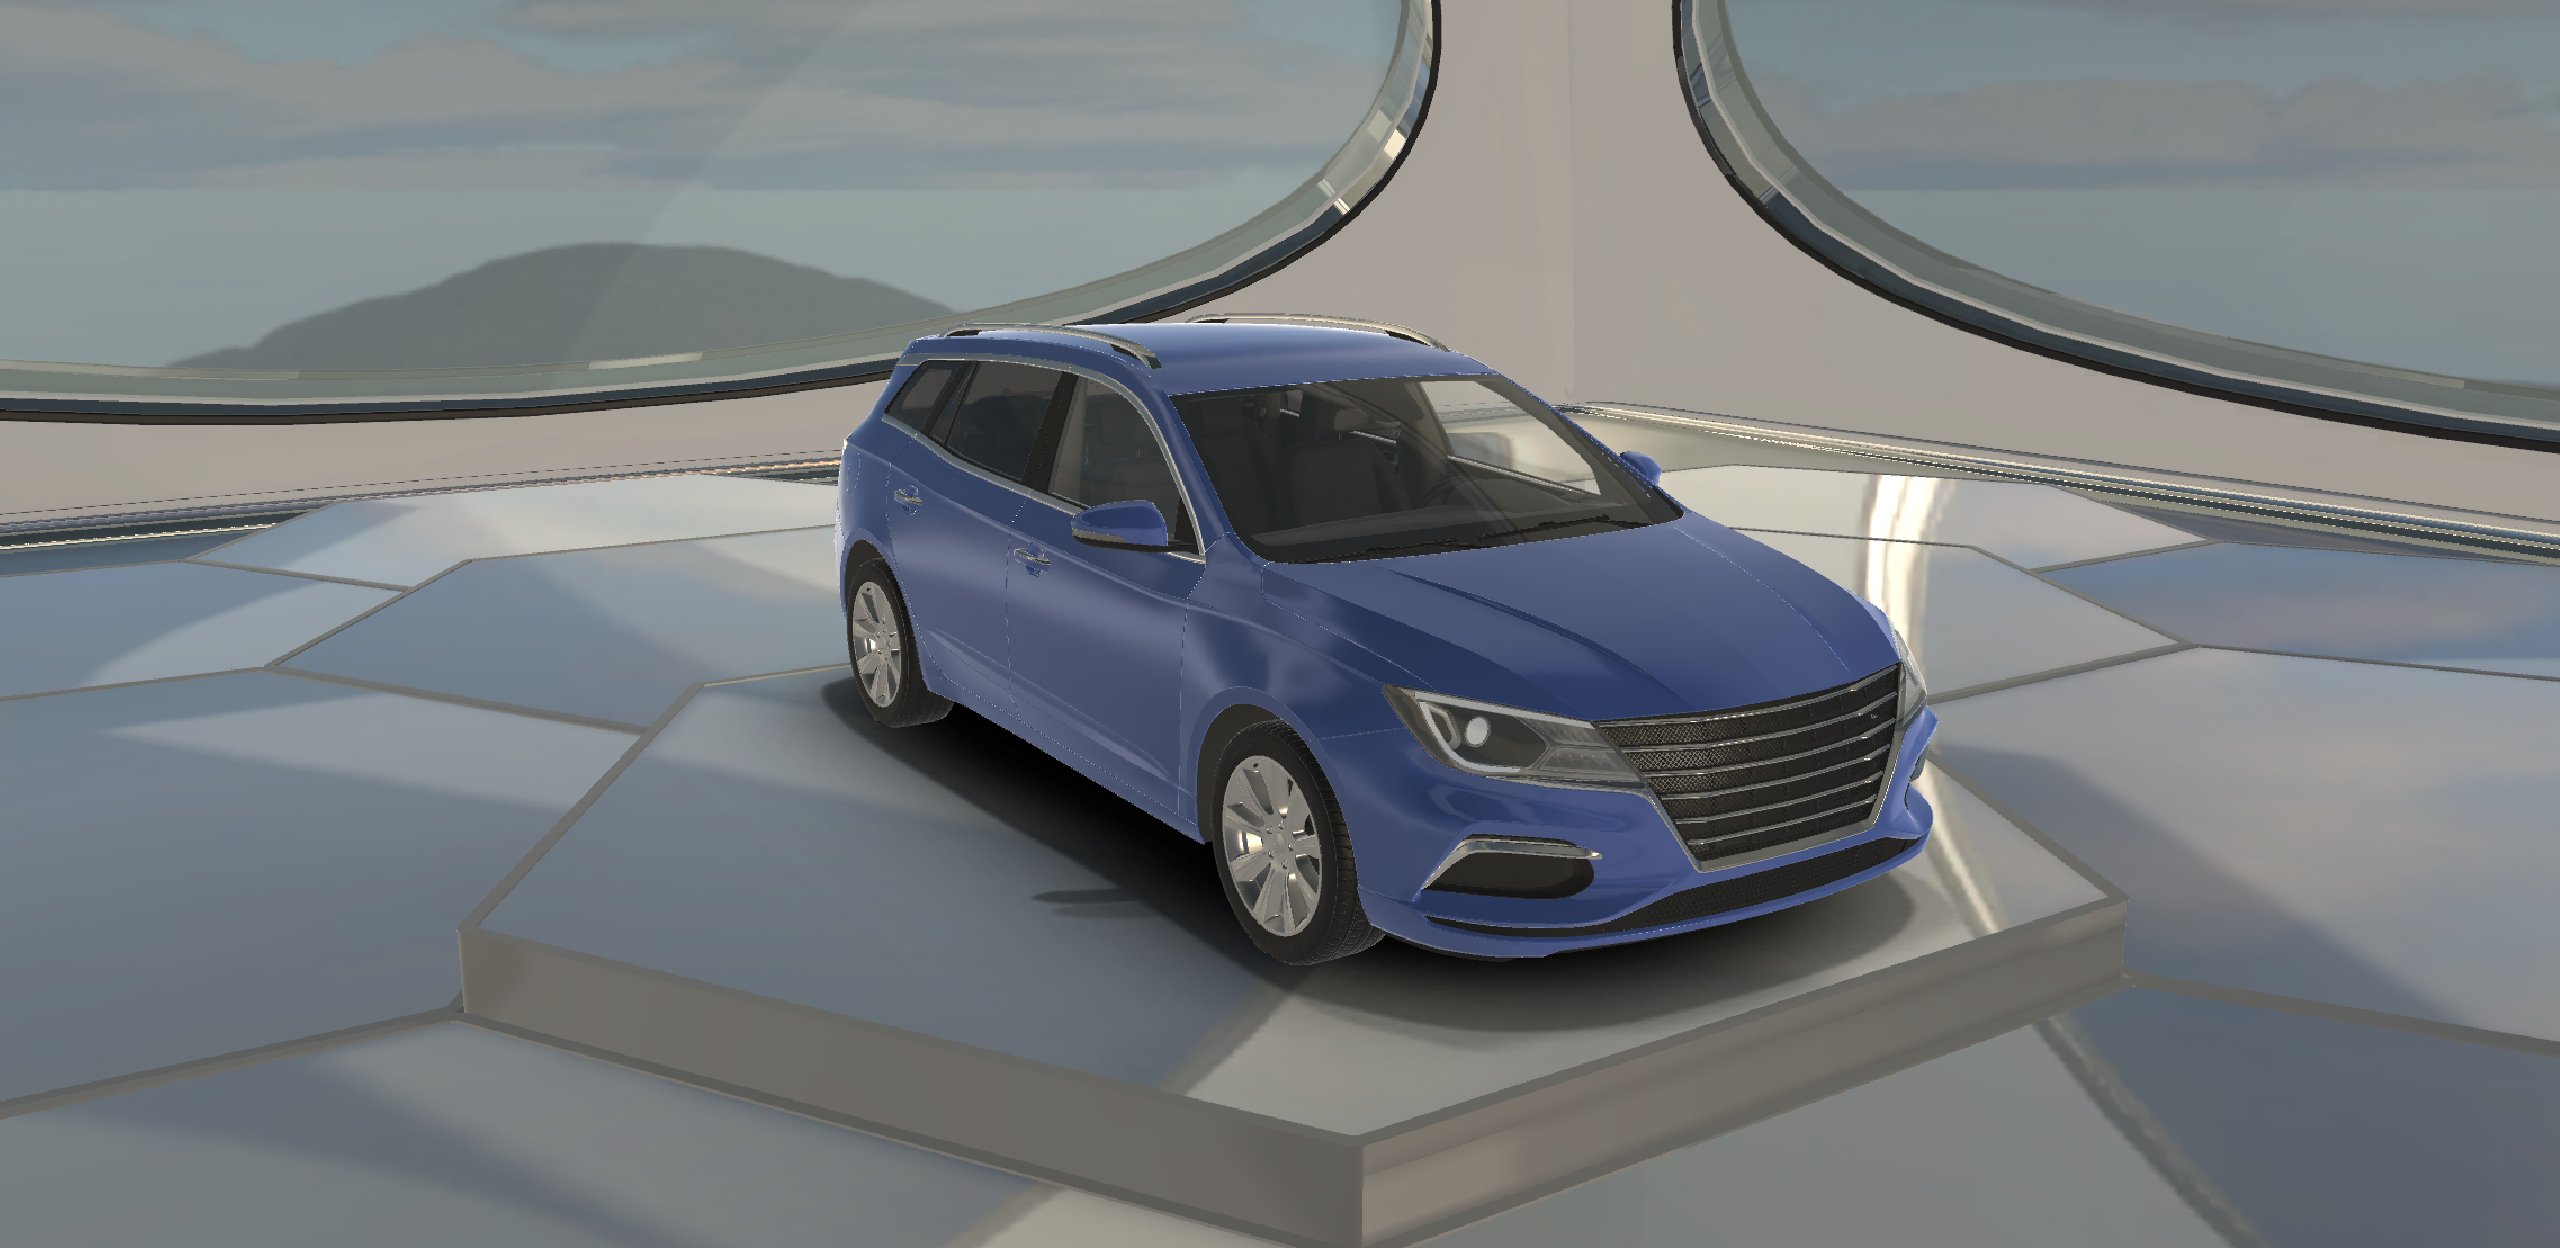 Station Wagon Car 2022 Lowpoly Sports Car 3D Model…